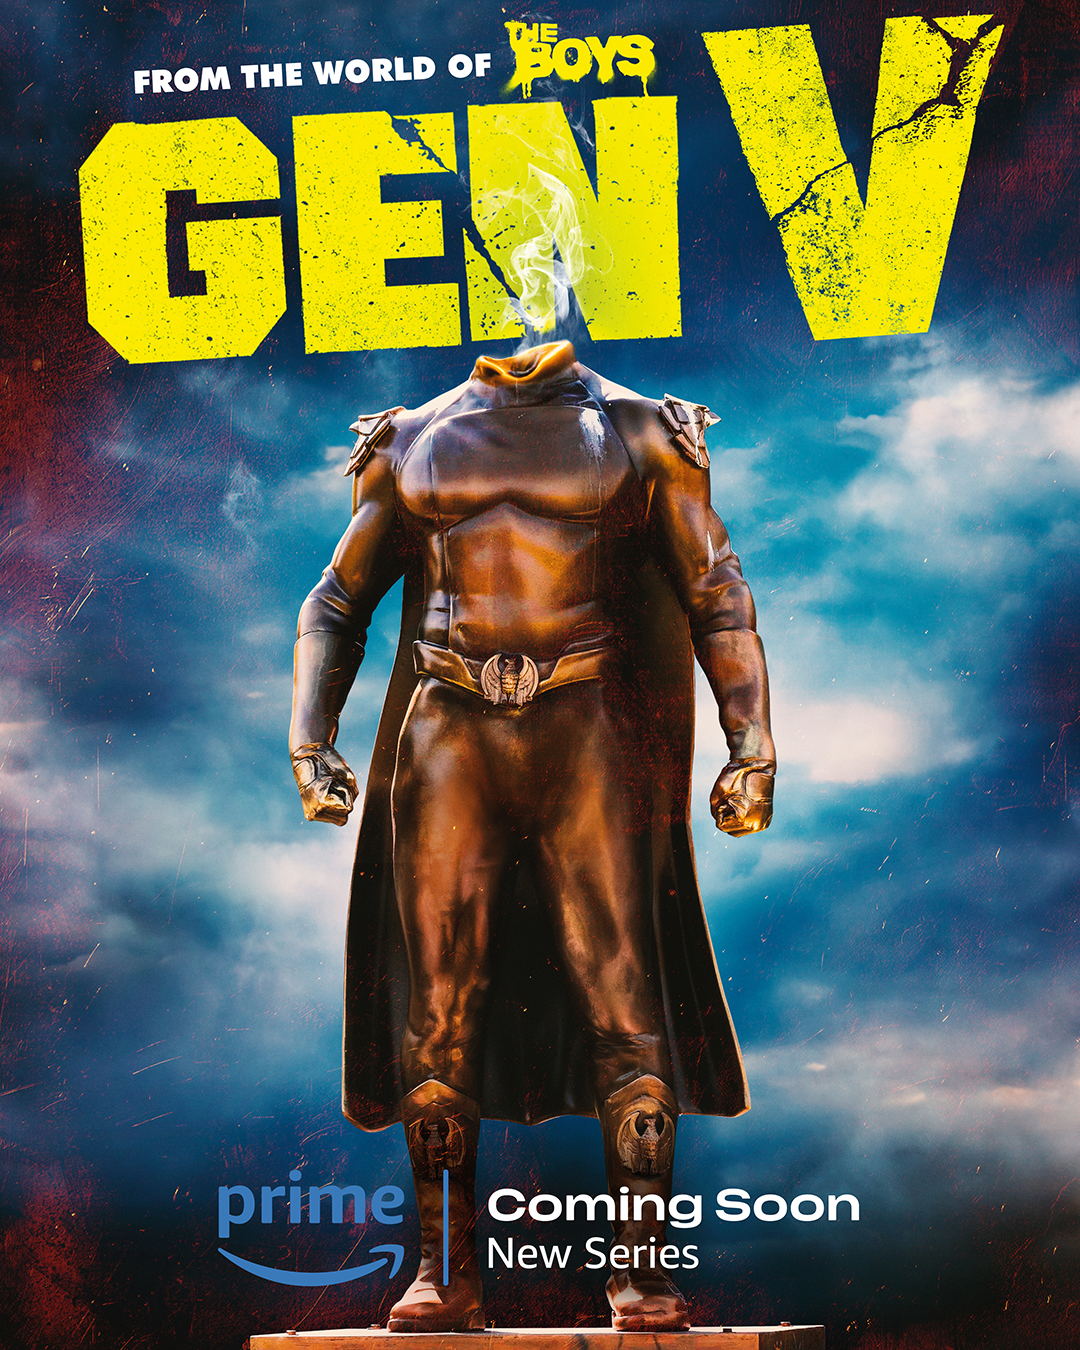 سریال  Gen V 2023 | ژن وی